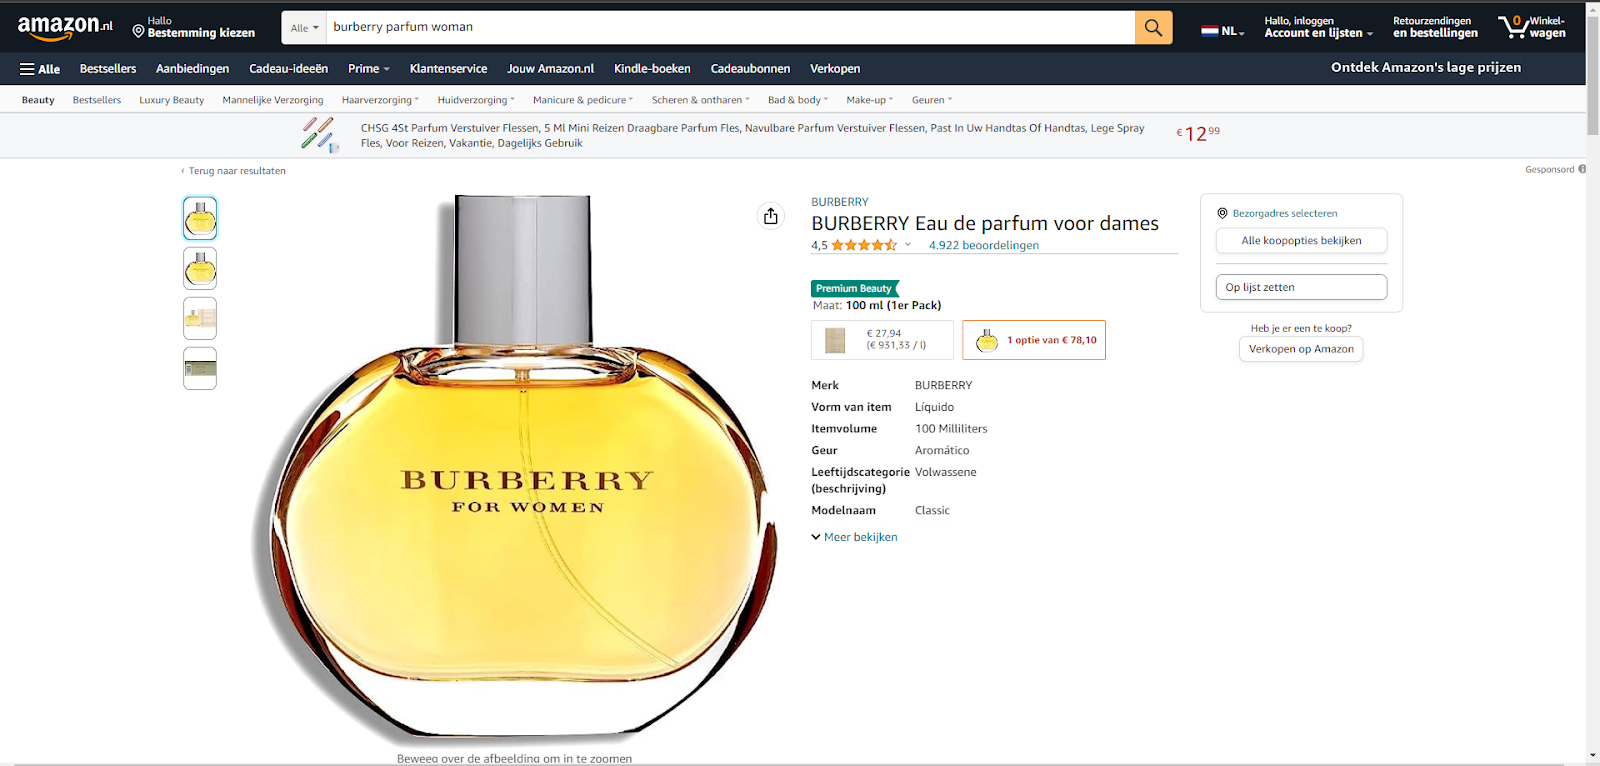 Burberry’s perfume on Amazon